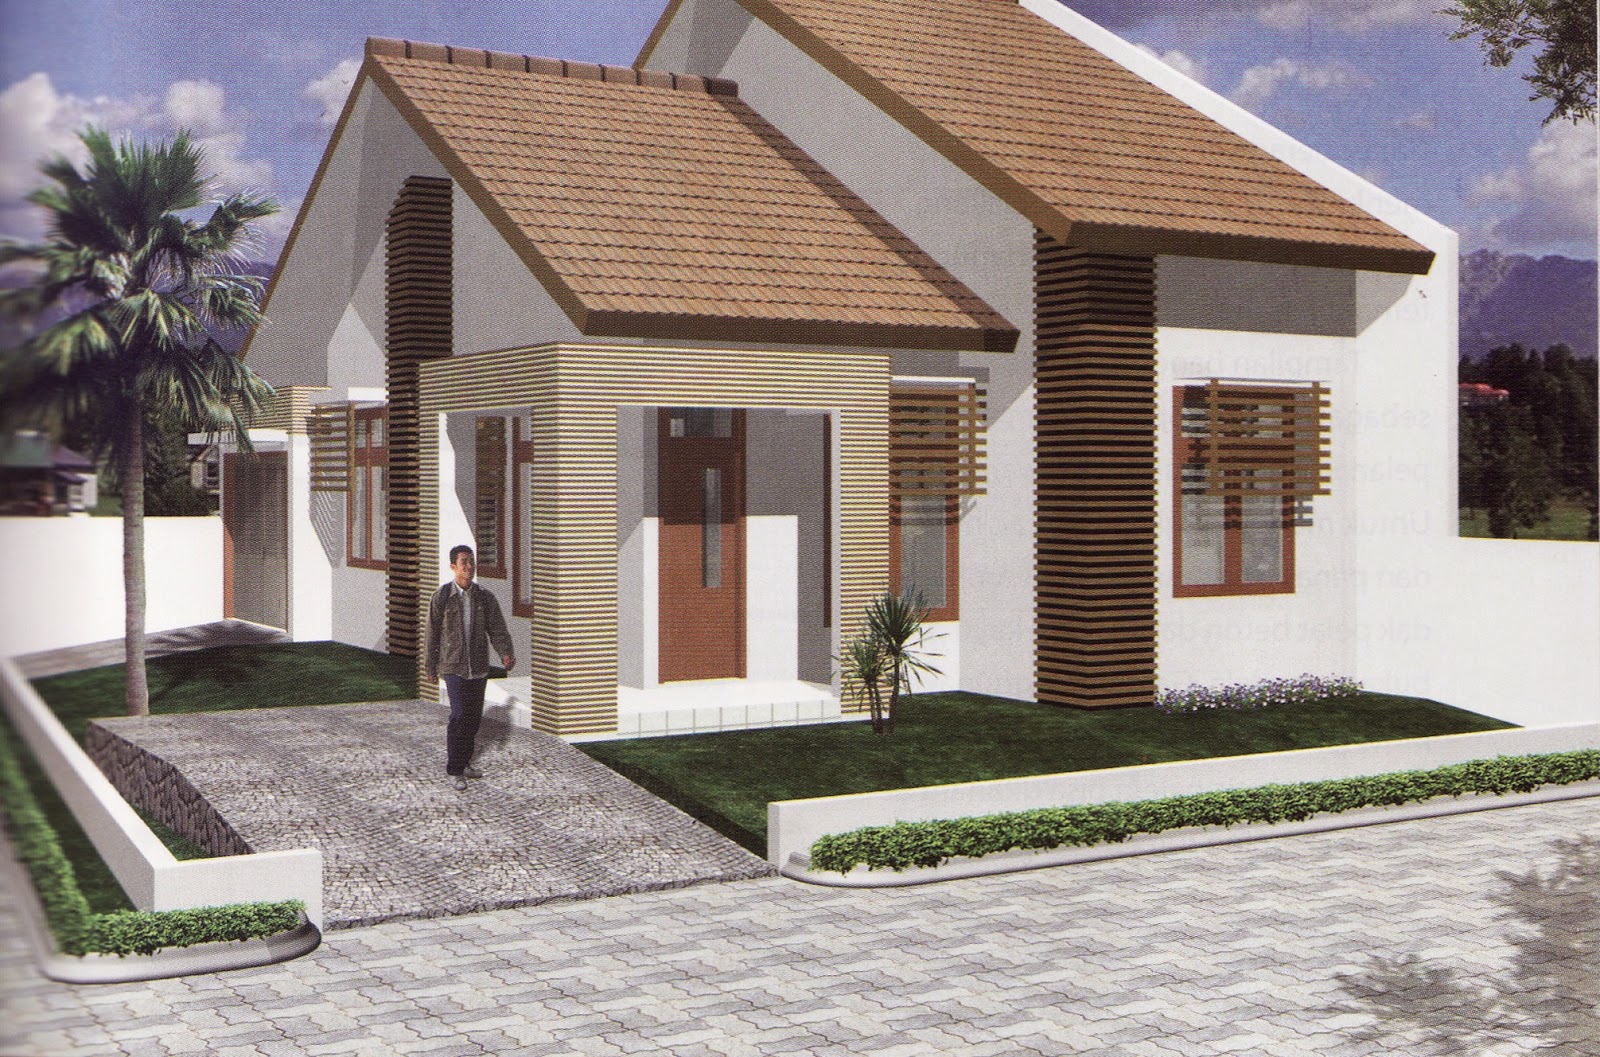 61 Desain Rumah  Minimalis  Luas Tanah 100m2 Desain Rumah  